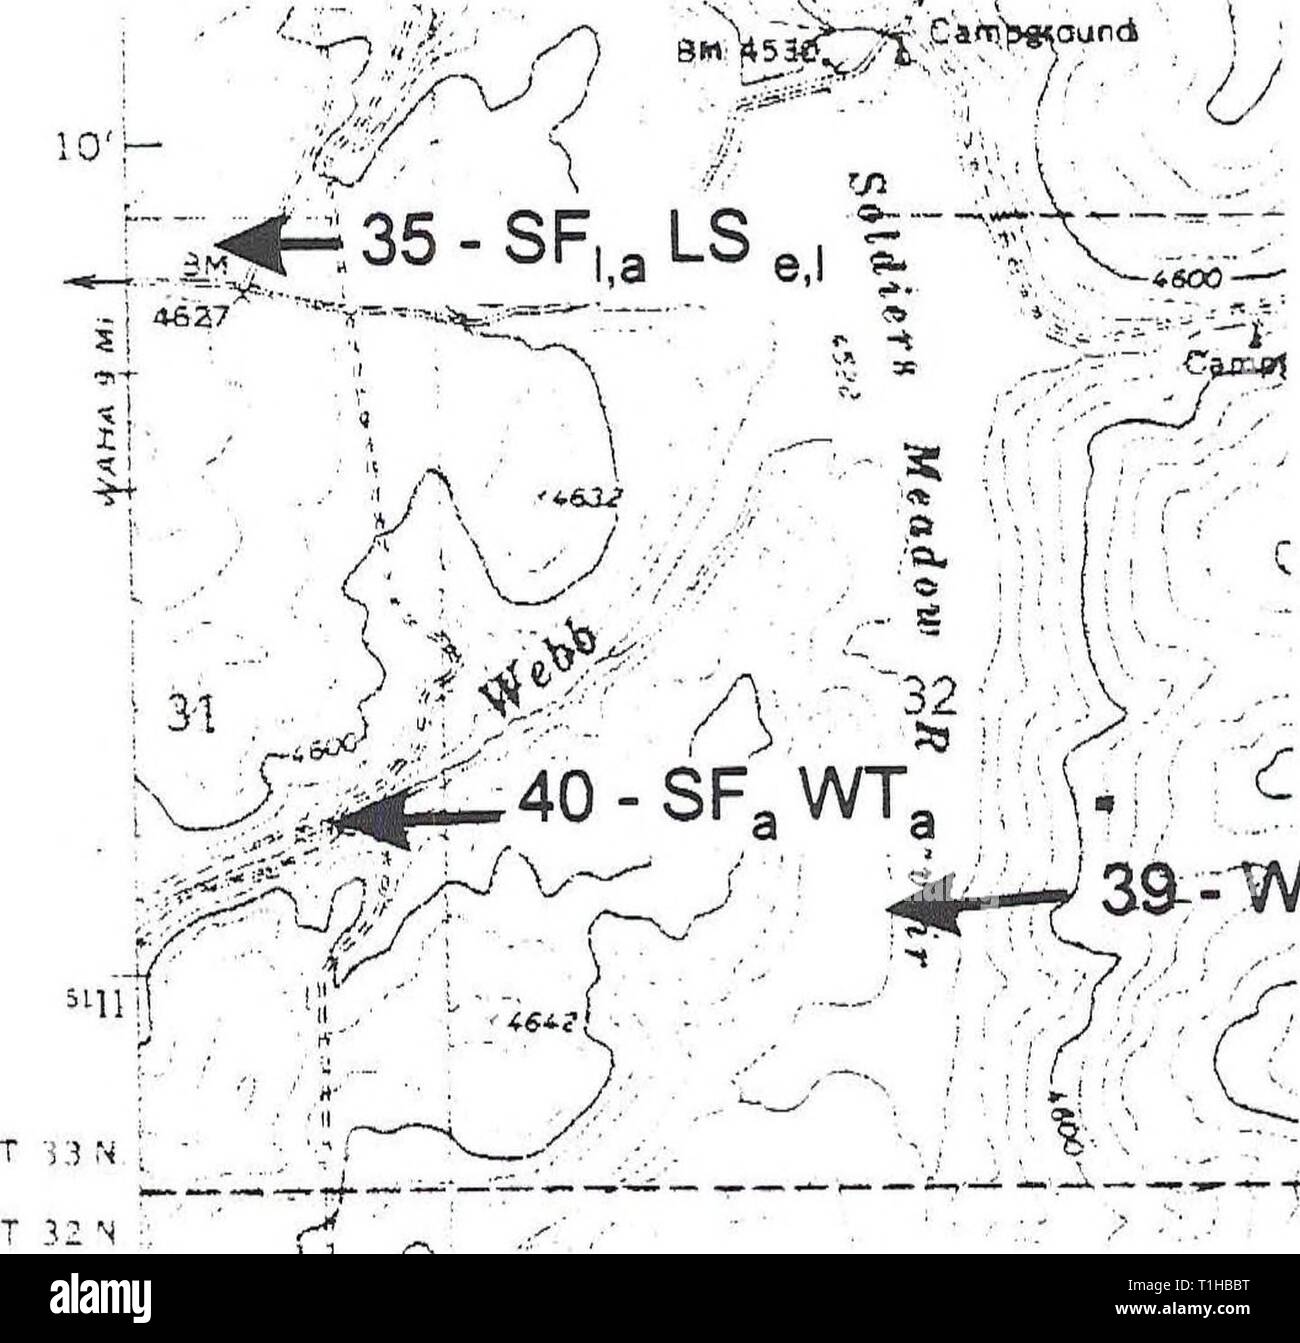 La distribuzione, la relativa abbondanza e distribuzione di habitat, relativa abbondanza, habitat e le associazioni di anfibi e rettili sulla montagna di Craig, Idaho distributionrela11llew Anno: 1998 Winchester West, Idaho soldati prato "ft fttsSTW'* 39T--WT, e,l,a w A 1 km LS = Long-toed Salamander WT = occidentale (boreale) Toad PT = Pacific Treefrog SF = Rana maculato TG = Western Terrestrial Garter Snake CG - Comune Garter Snake a = adulti(s) c = chiamando e = uova 1 = larve o girini m = metamorphs (anfibi) Figura 46 Ubicazione di stagni e gli anfibi e rettili dal 1994 e 199 Foto Stock